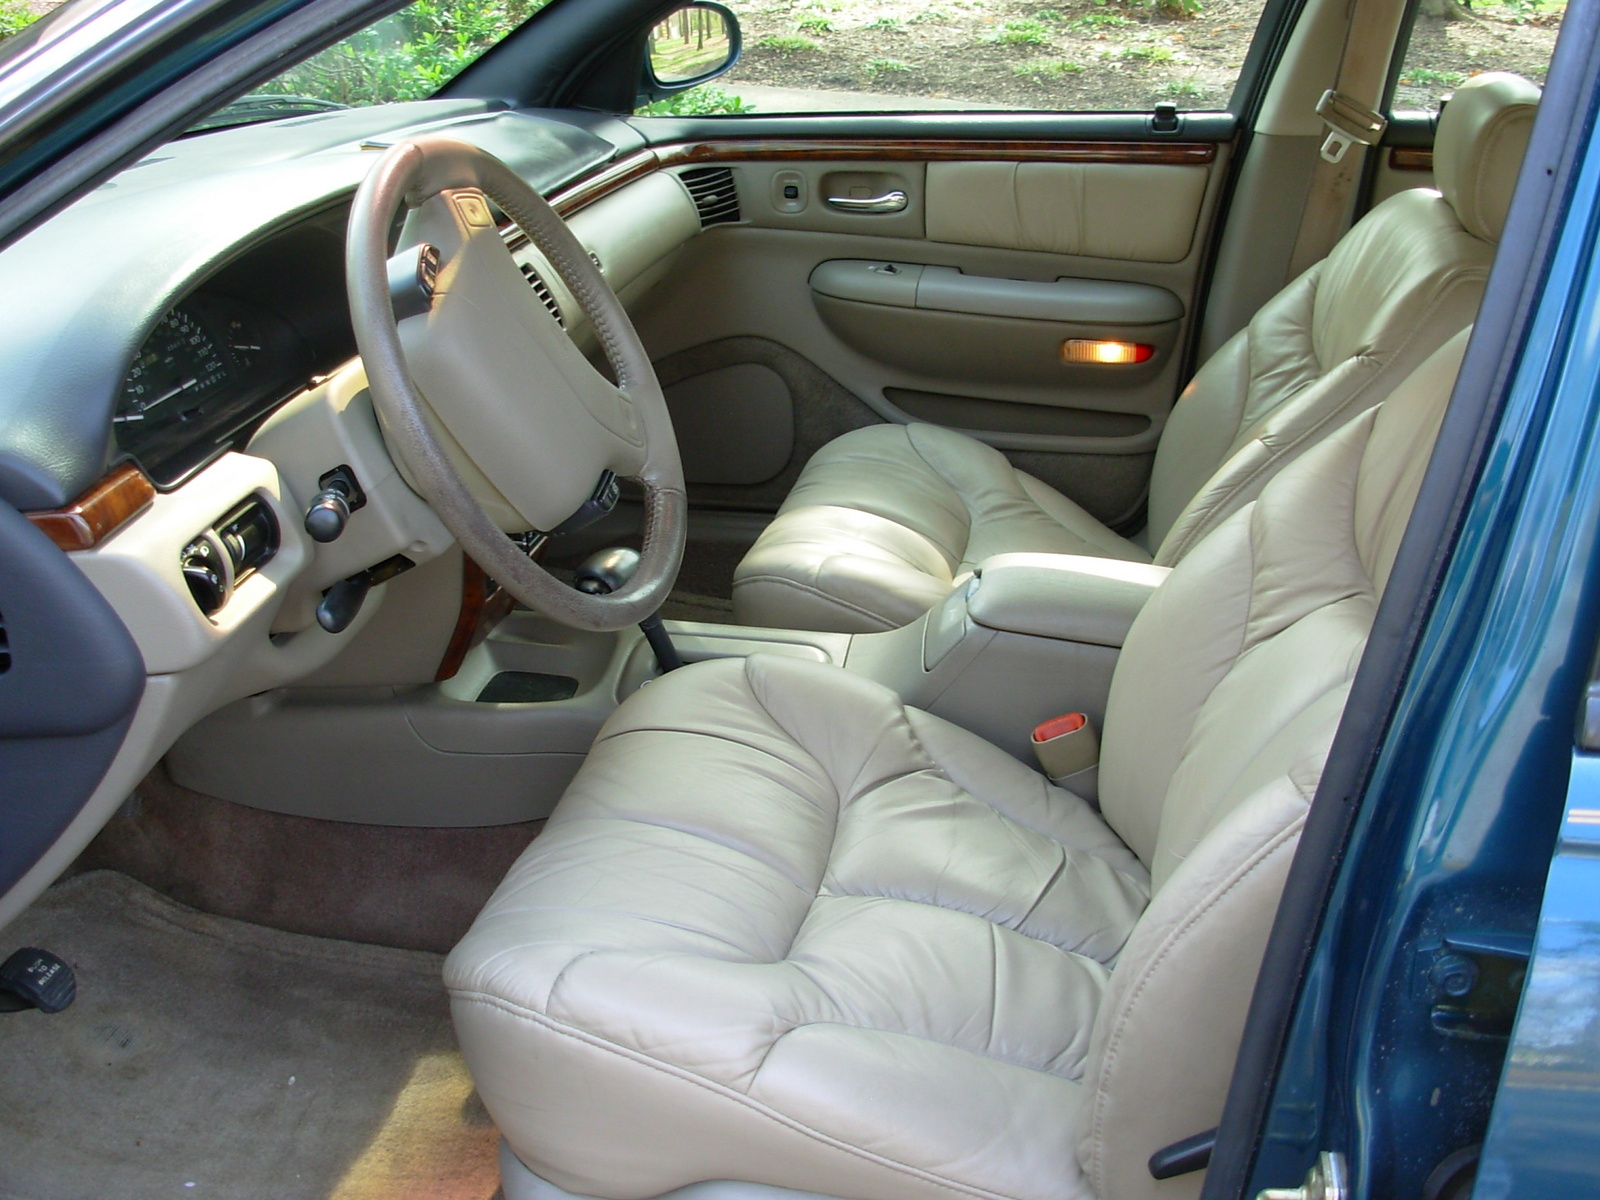 1996 Chrysler lhs interior #2